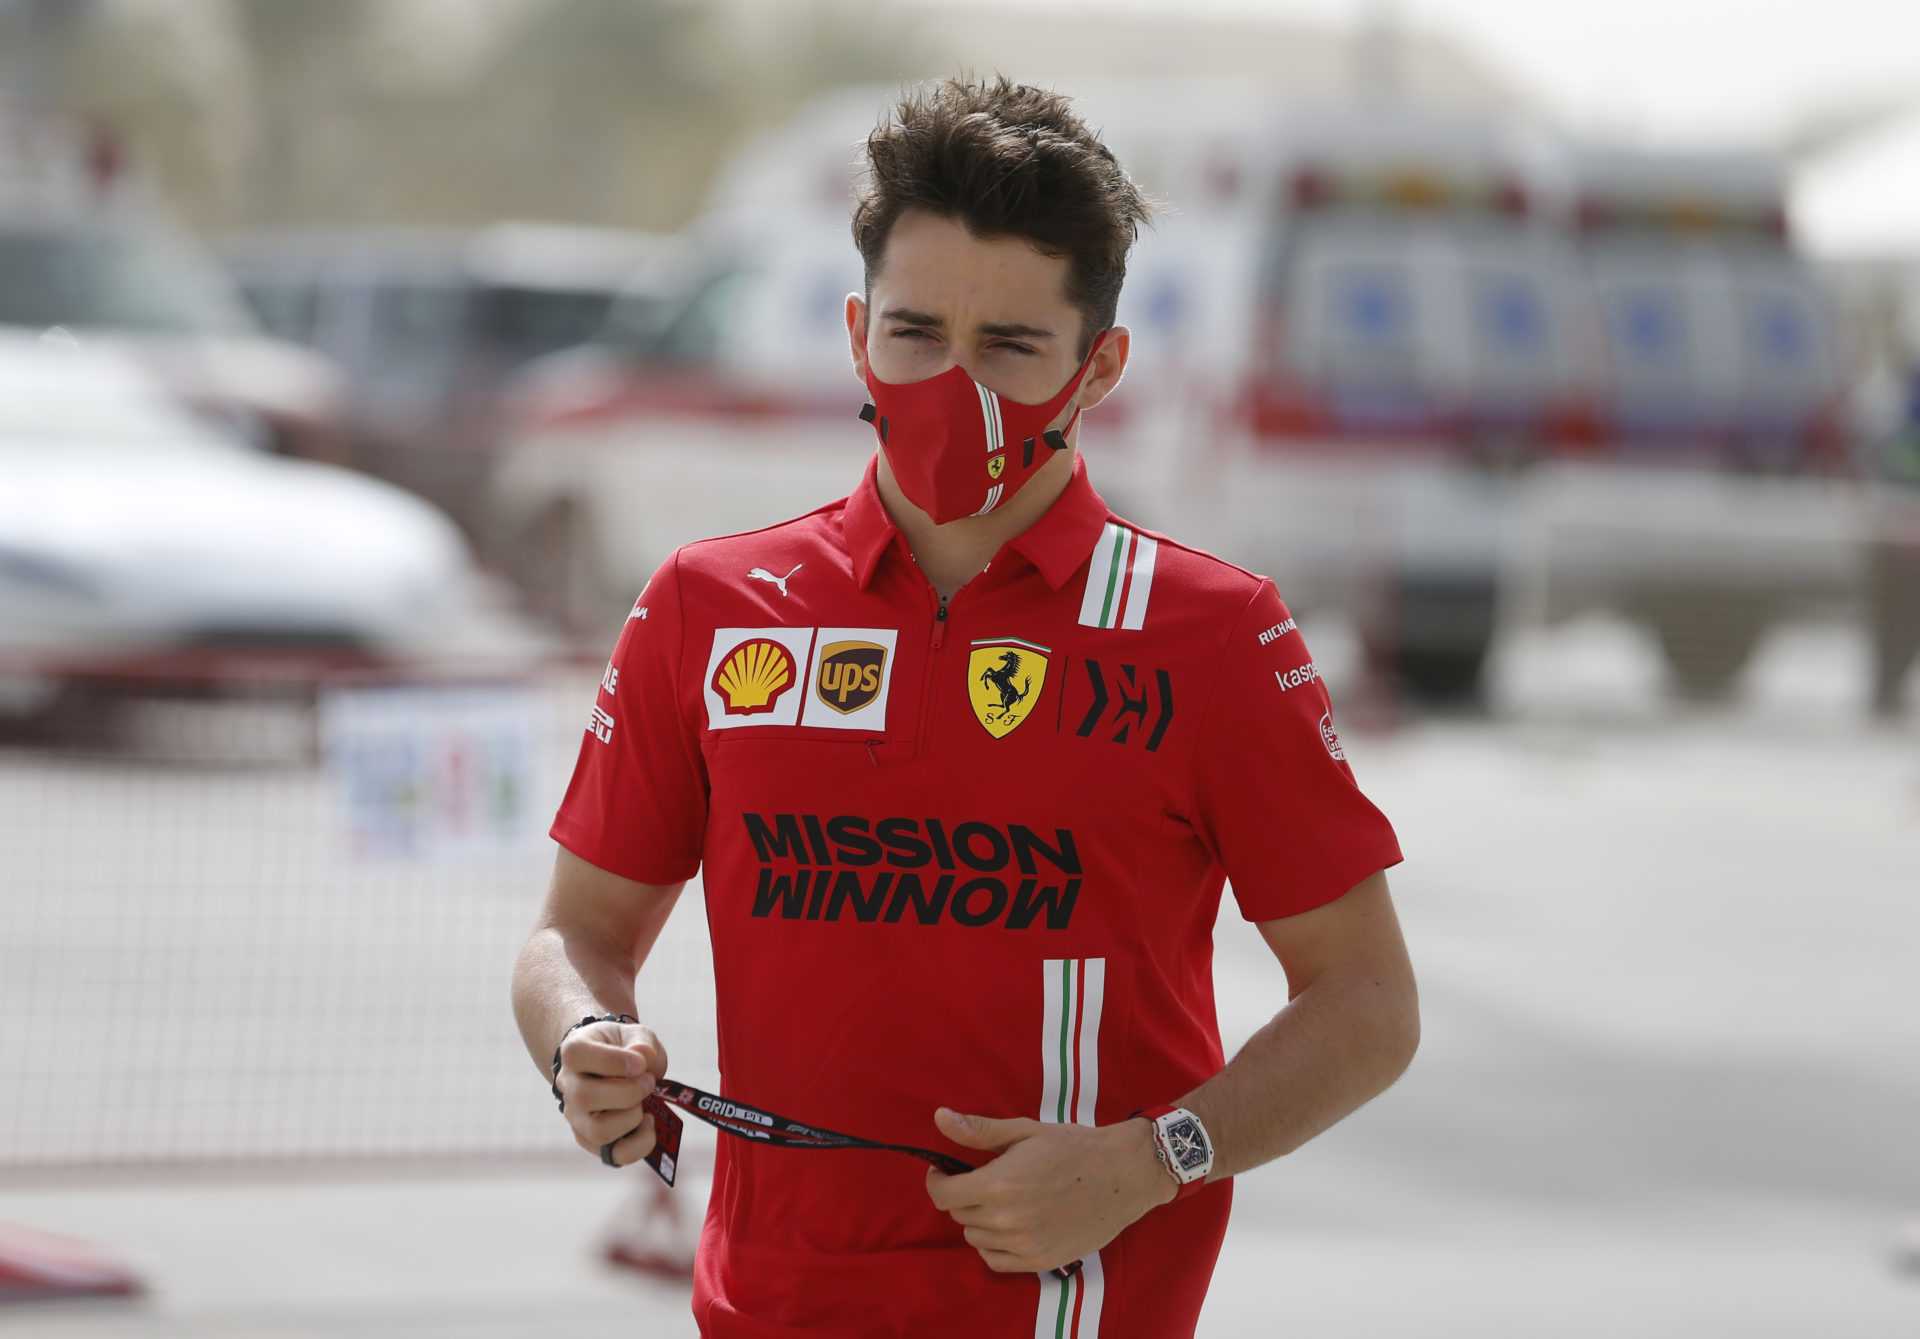 Le pilote Ferrari Charles Leclerc regarde avant les essais